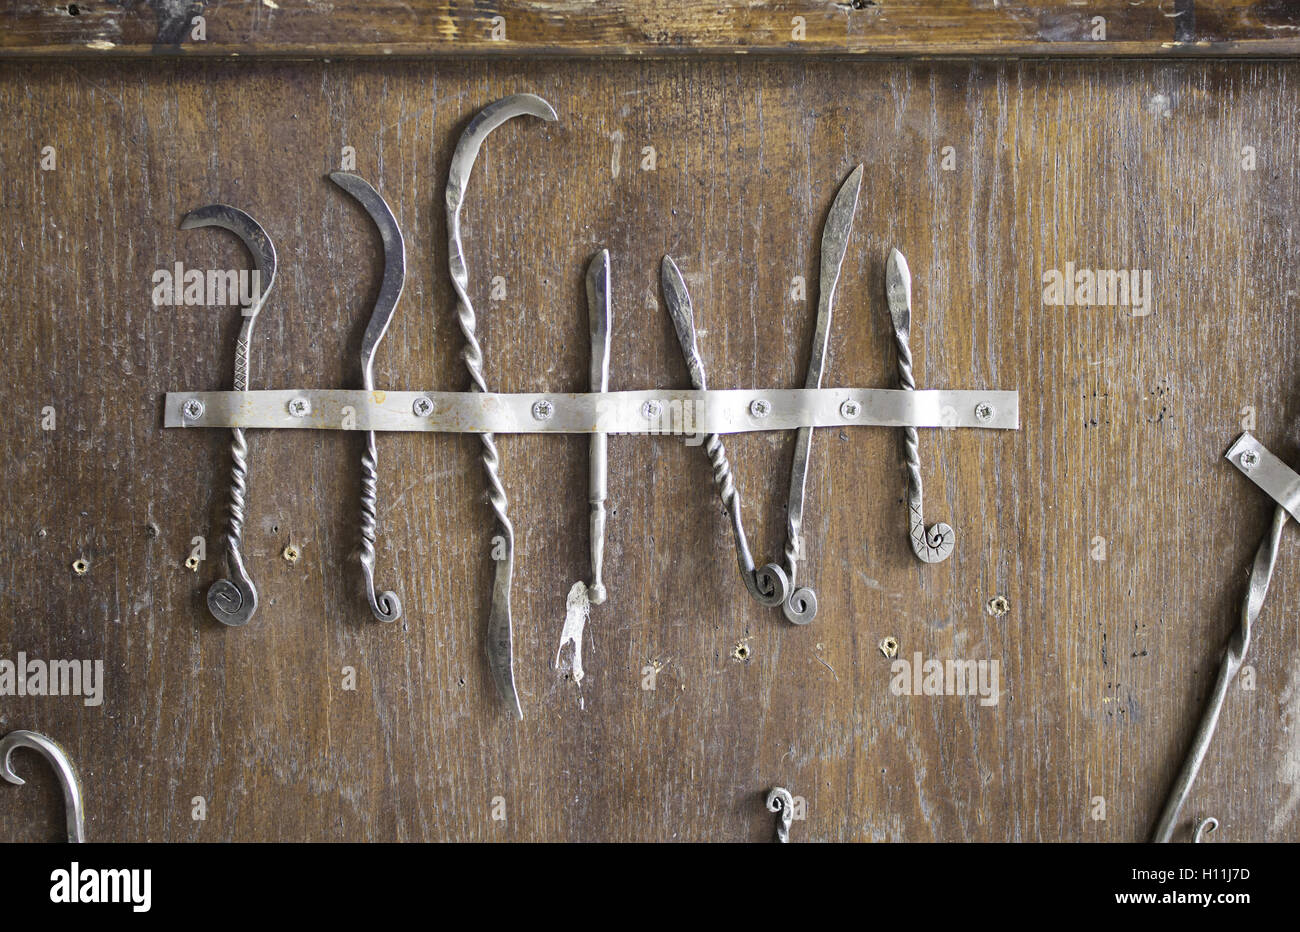 Inquisition vieux instruments médicaux et les scies d'acier Banque D'Images